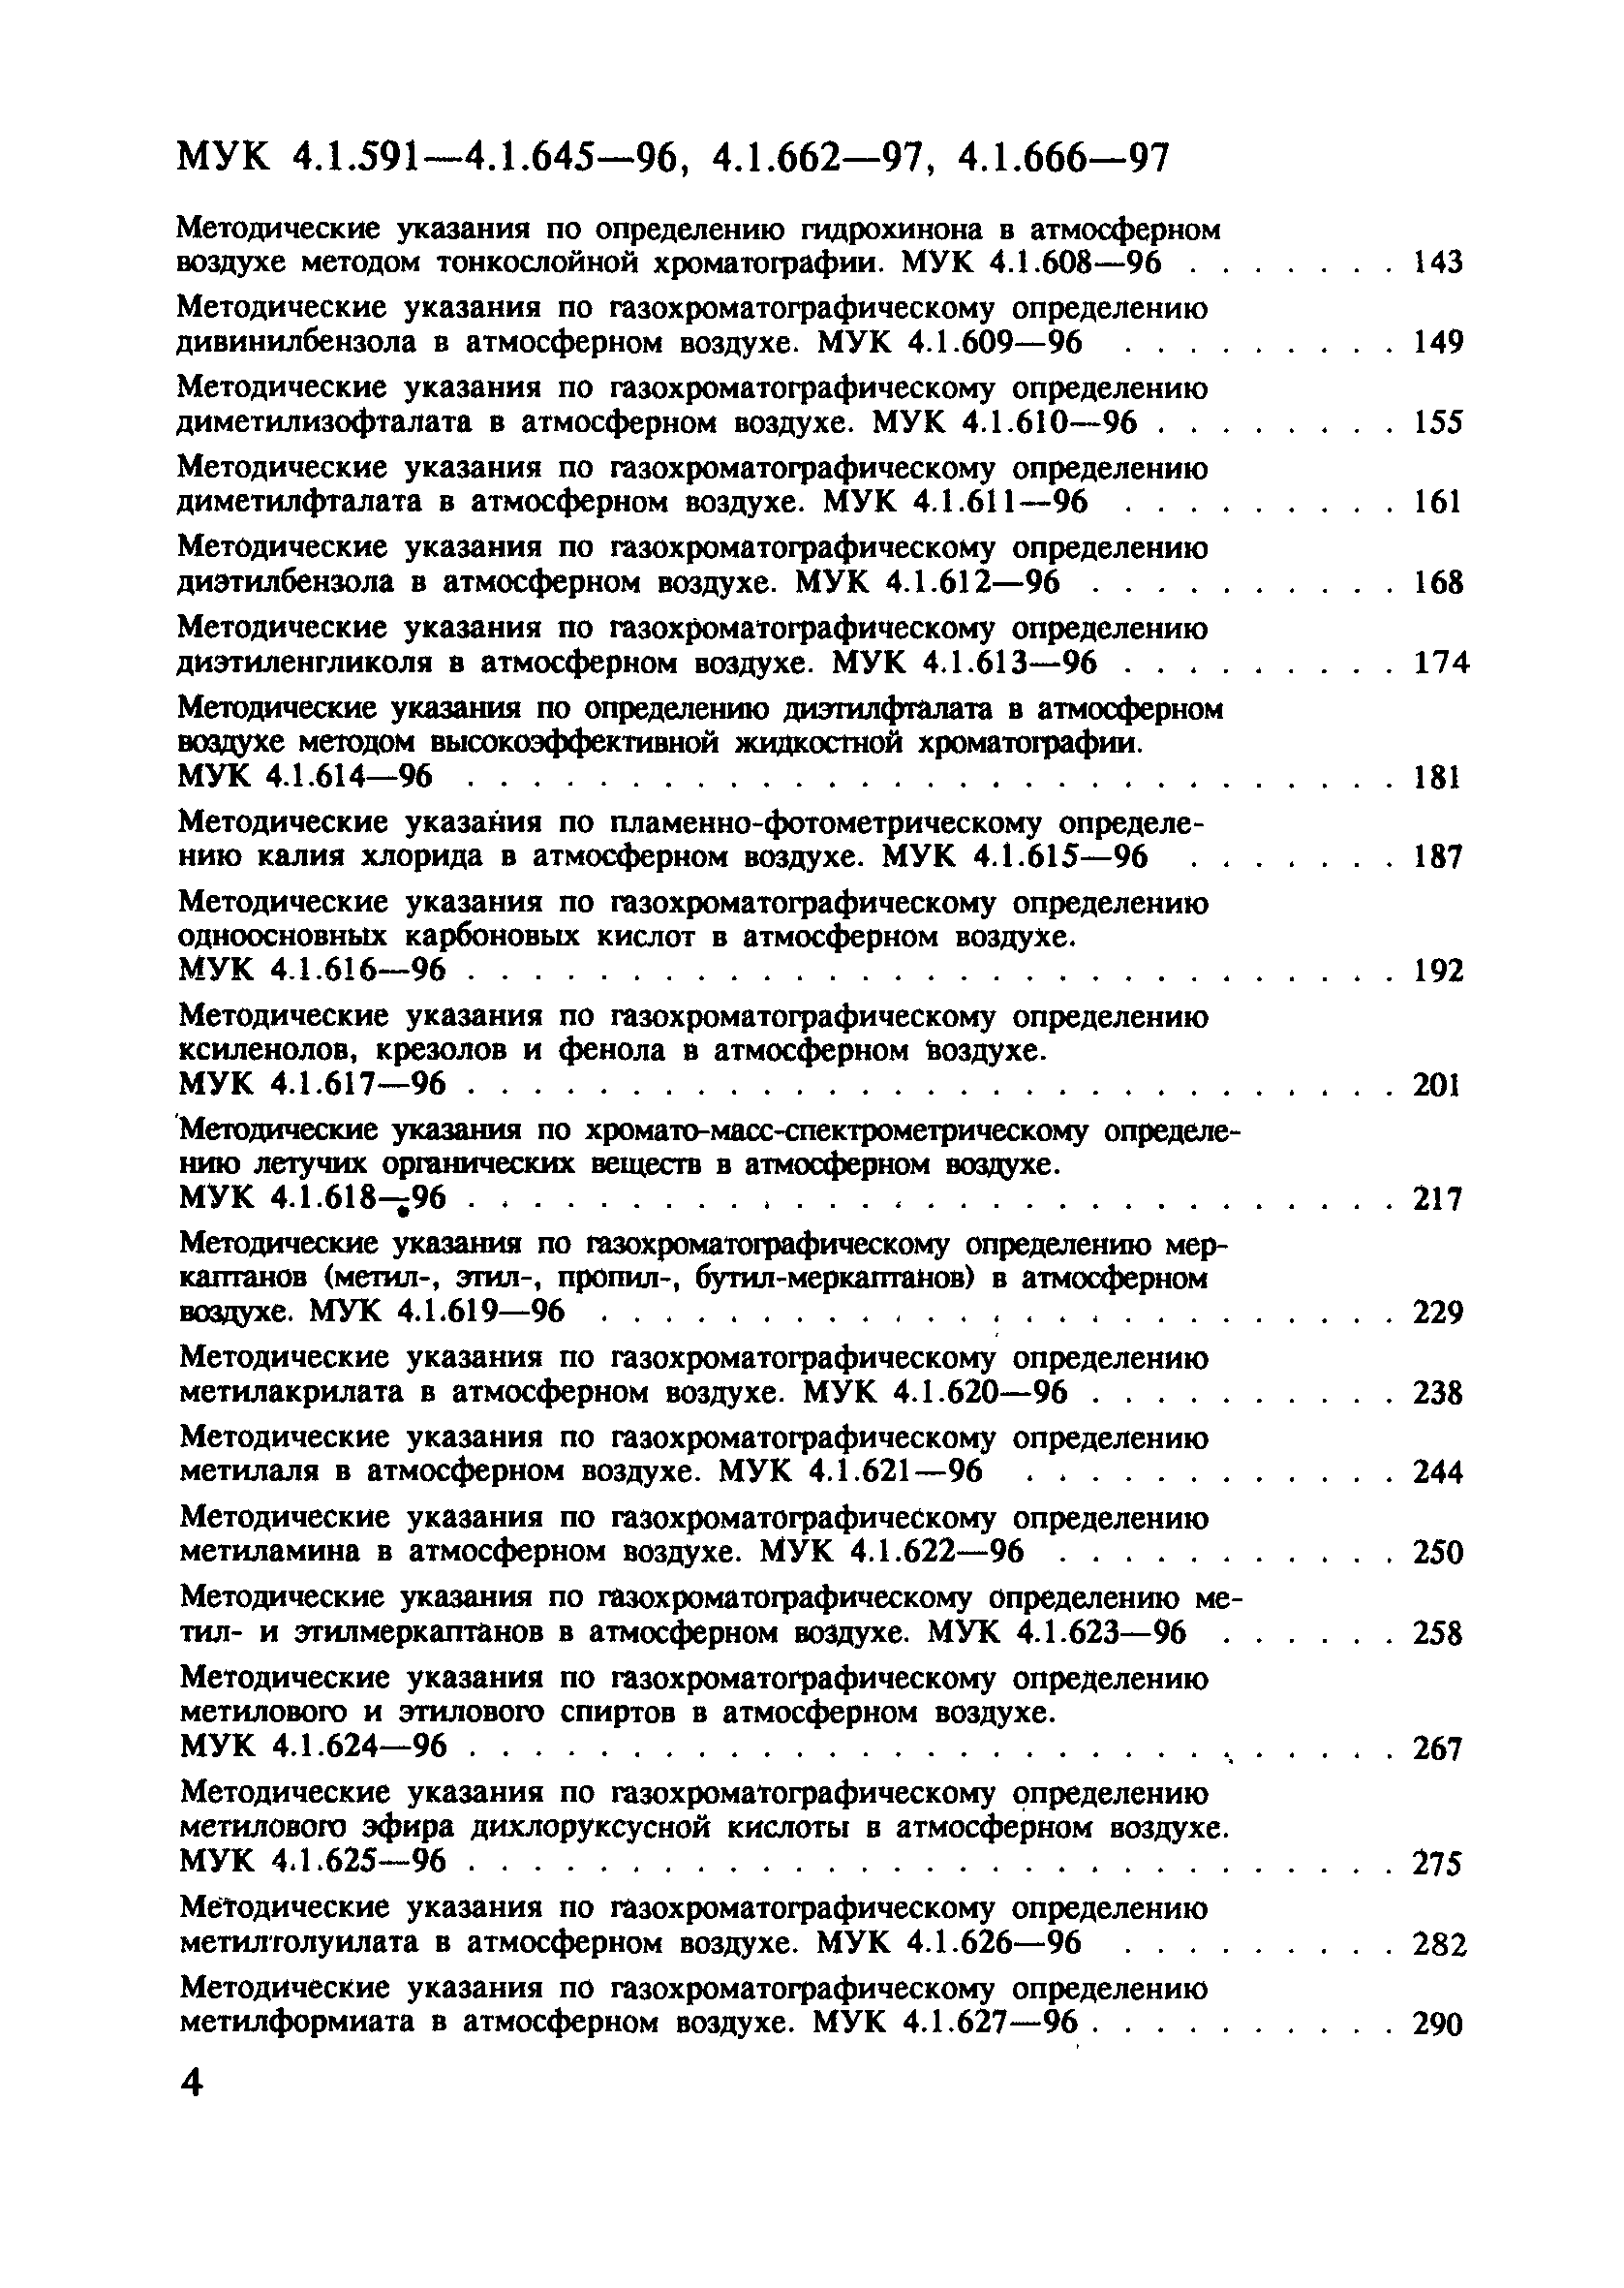 МУК 4.1.638-96